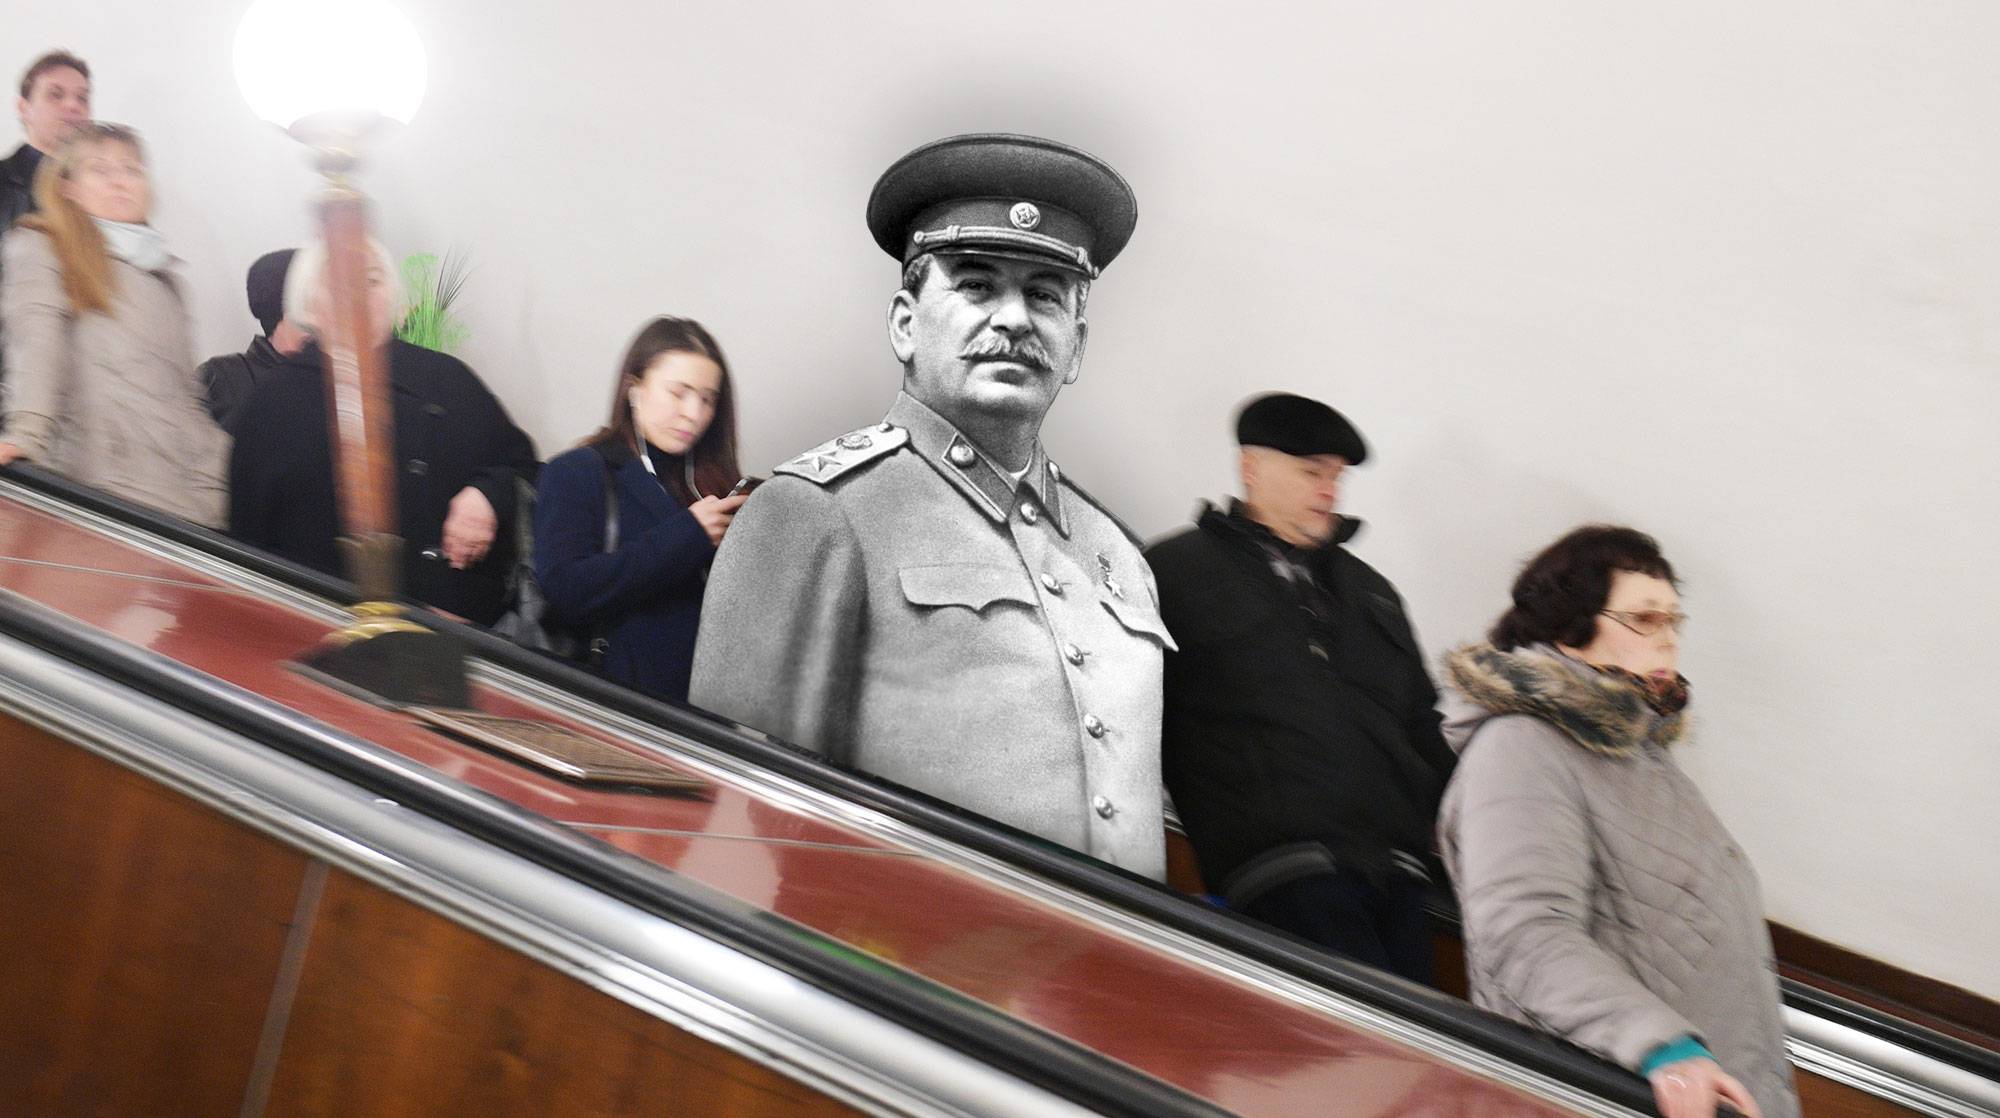 метро маяковская во время войны